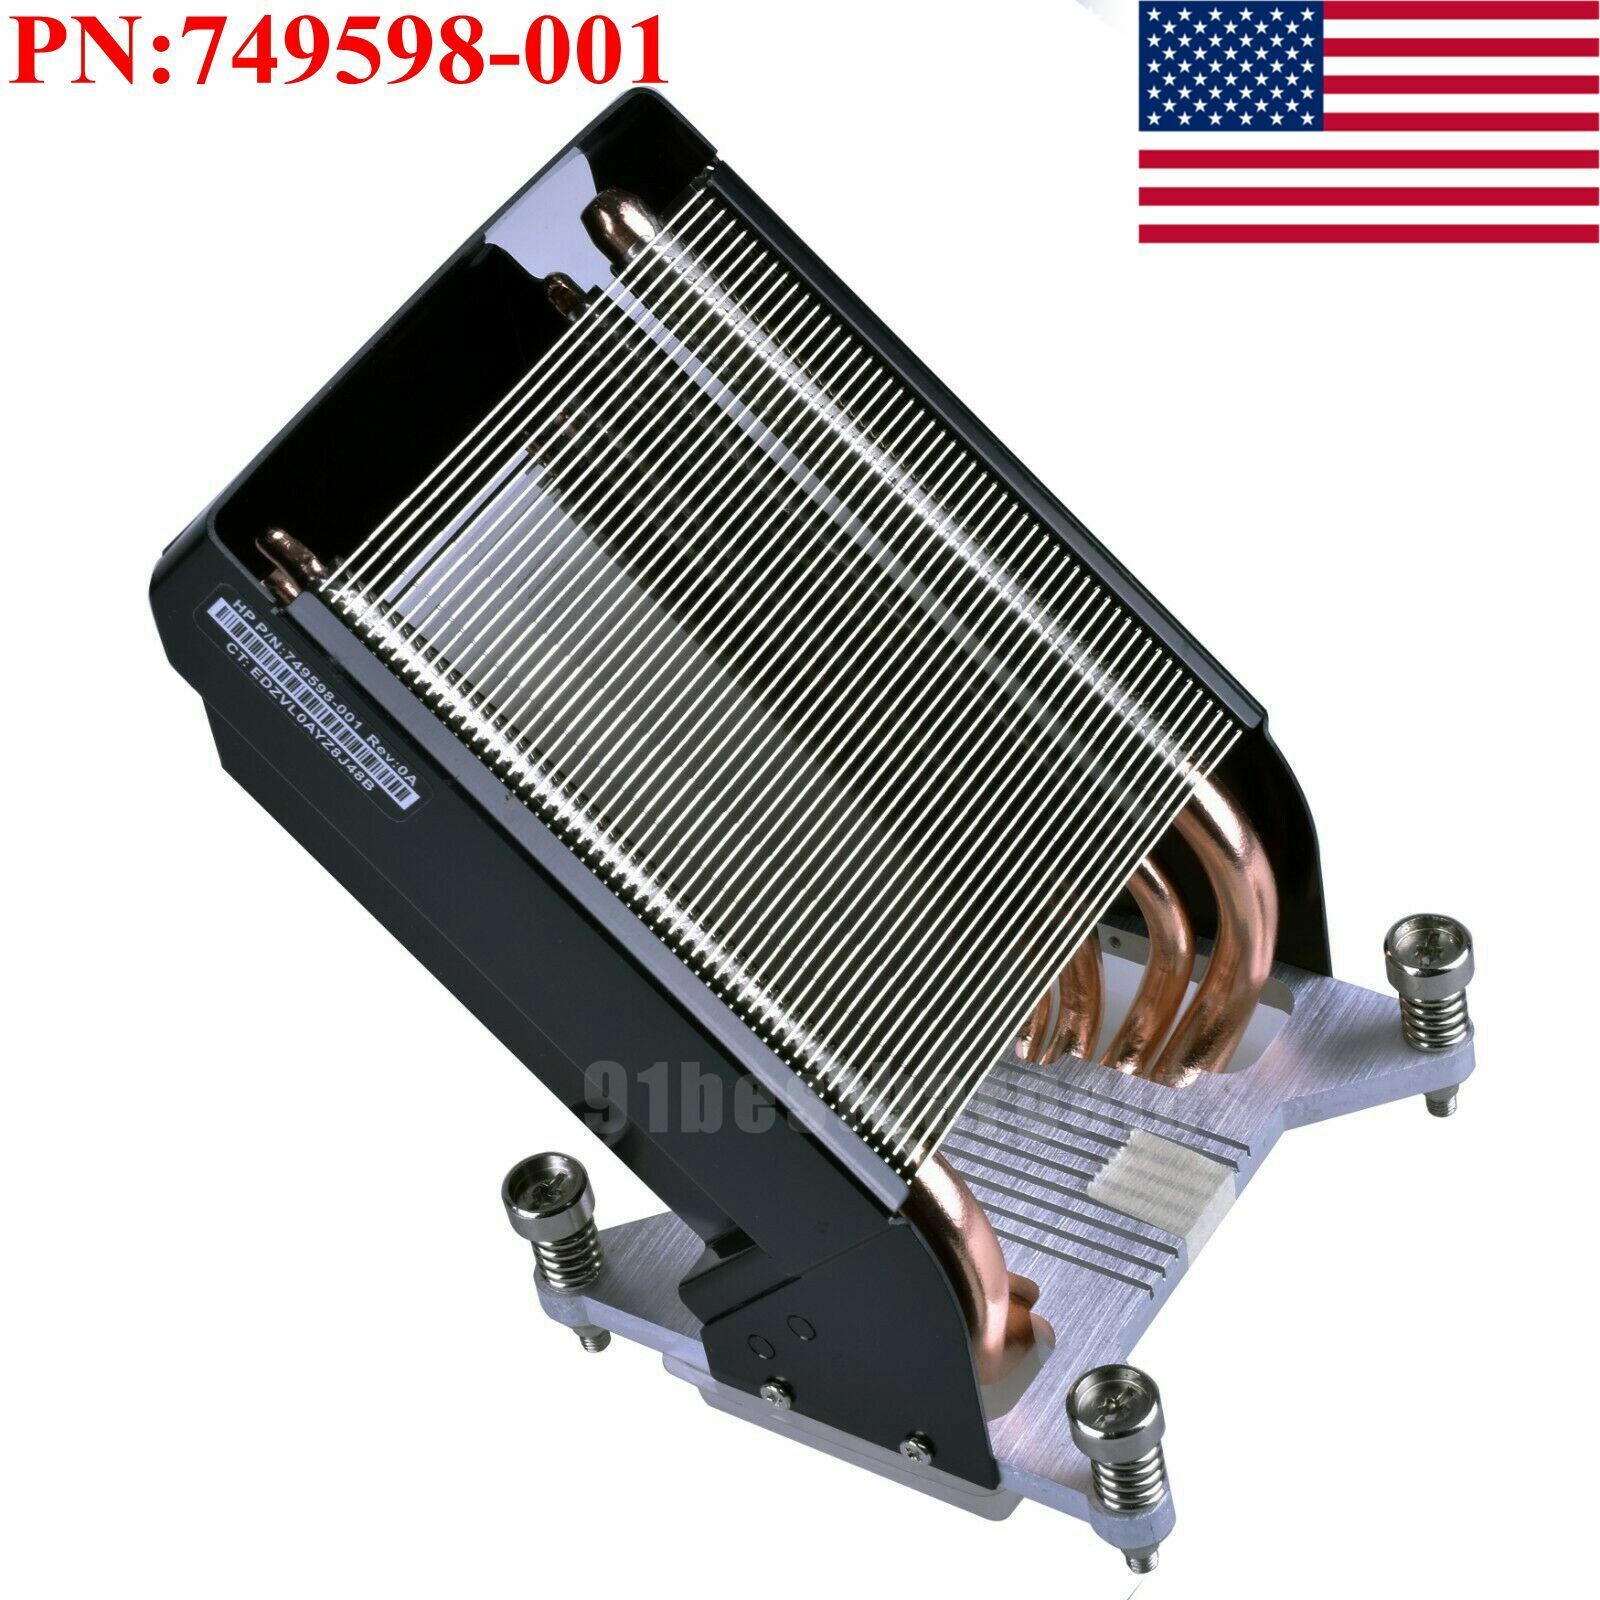 Heatsink CPU Fan HYBRID For HP Z840 Z820 749598-001 782506-001 Fan 647113-001